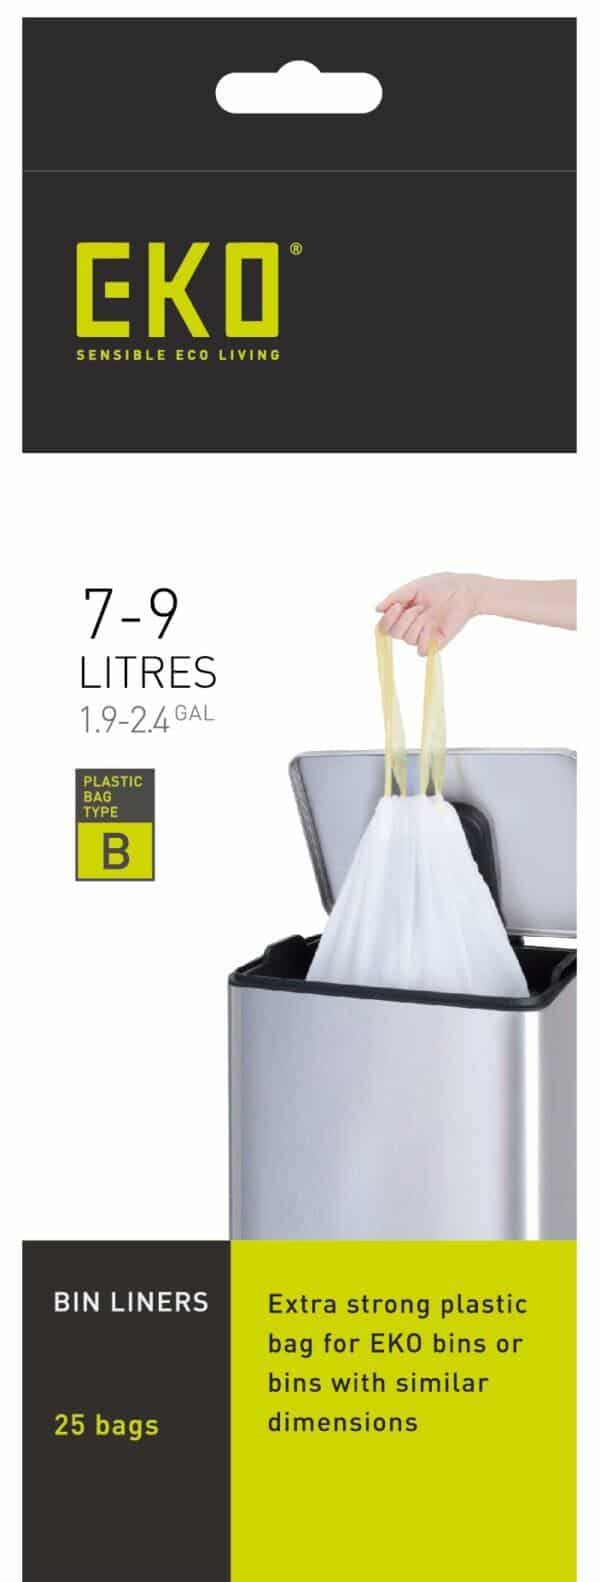 Eko 7 - 8 gallon trash bags, Size B Bin Liners. 

Product Name: Size B Bin Liners 7-9L, 25 bags.